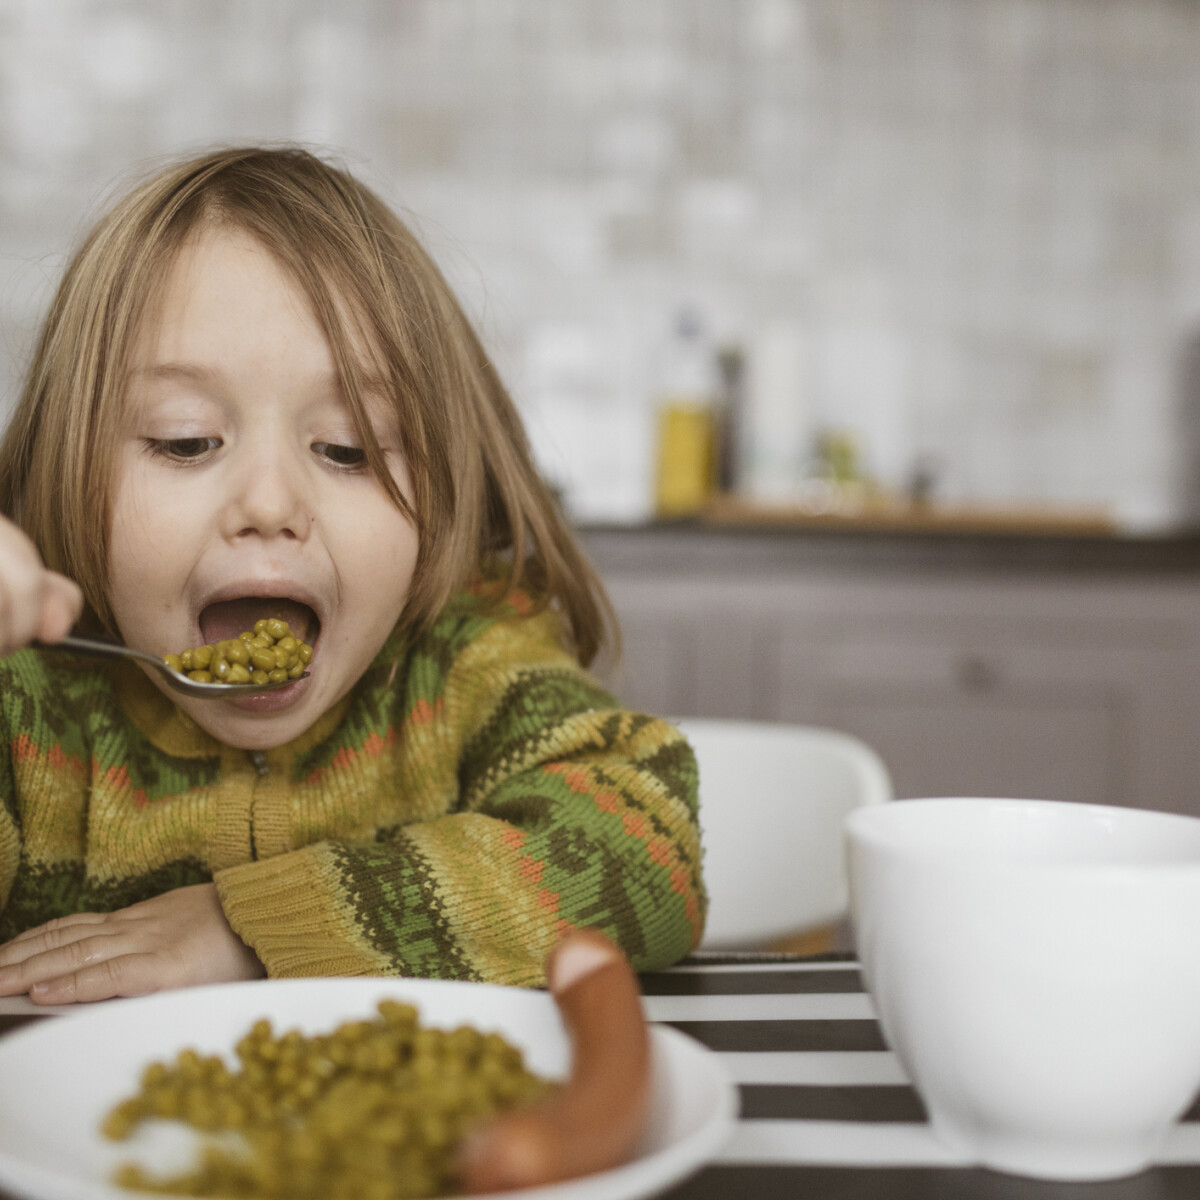 Ezért enne egészségesebben a gyerek, ha hosszabb lenne az ebédszünete